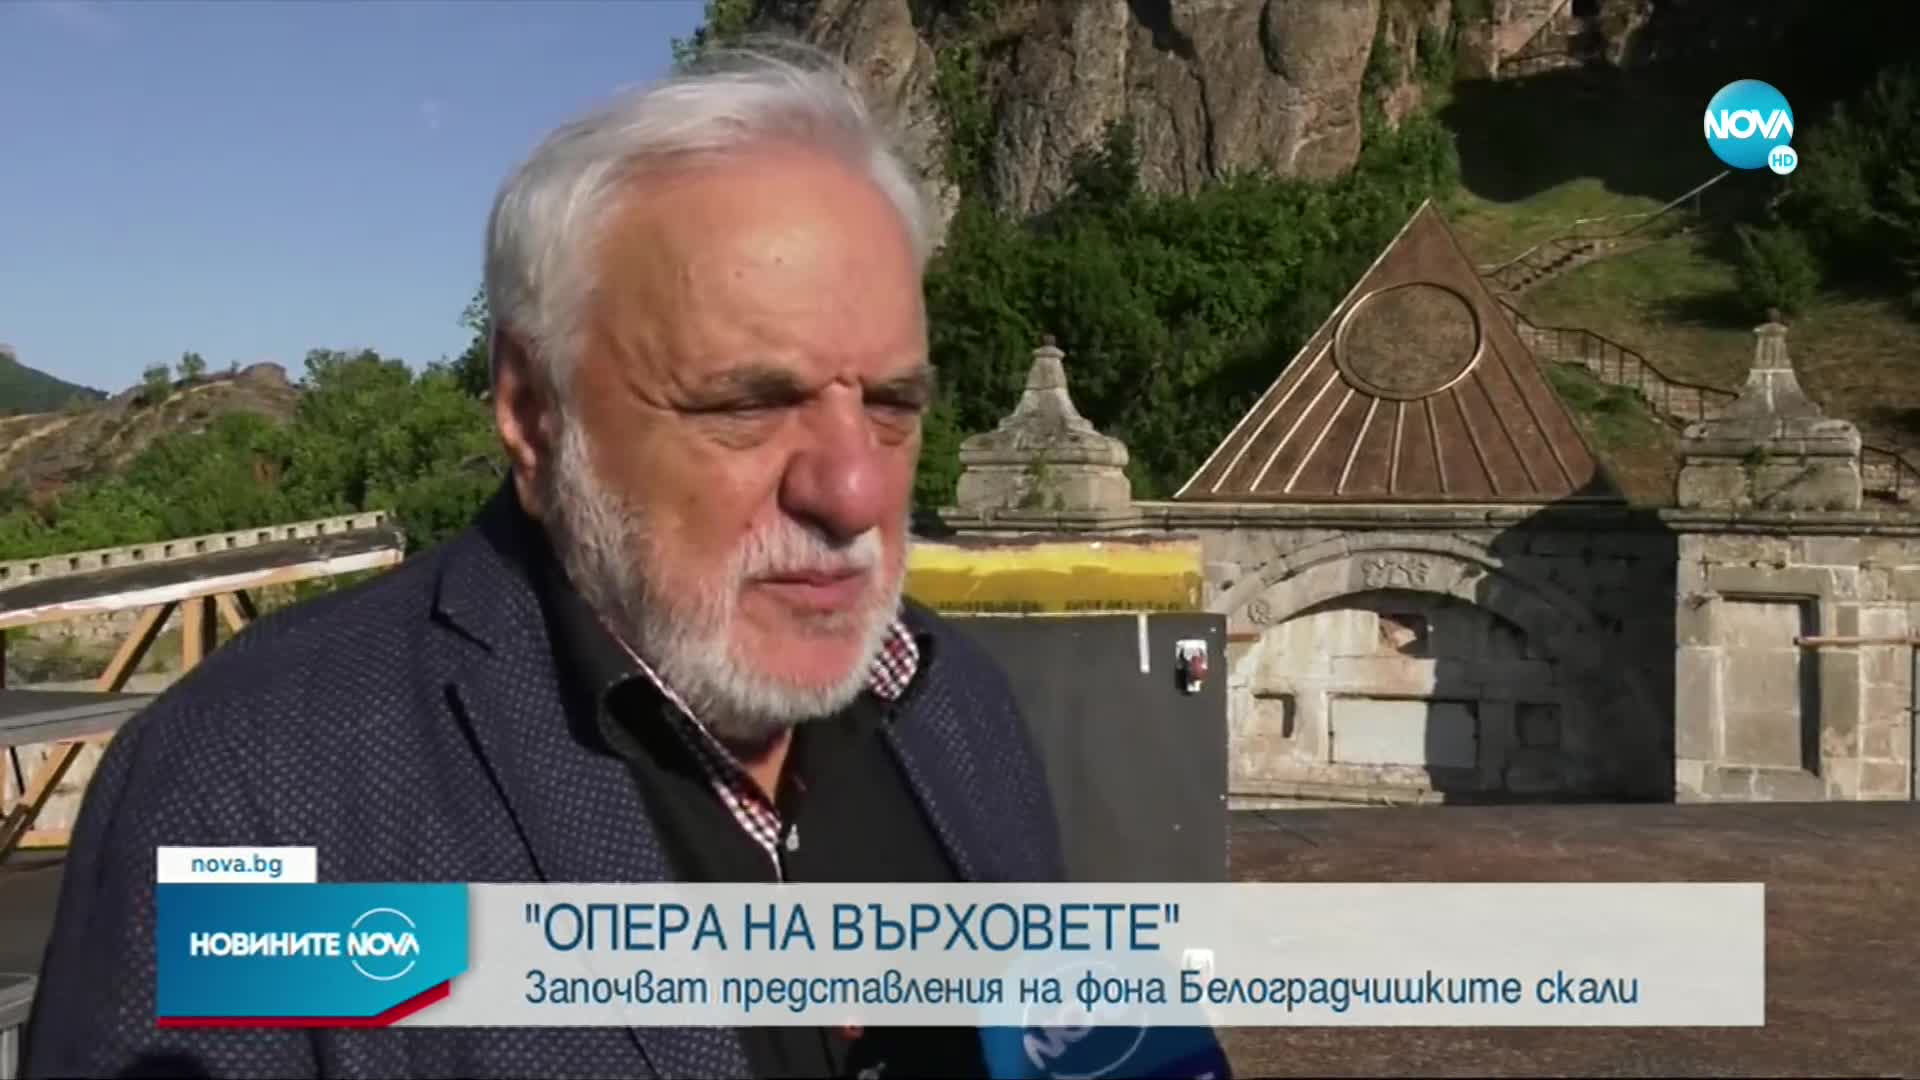 "Опера на върховете": Започва фестивалът на Белоградчишките скали